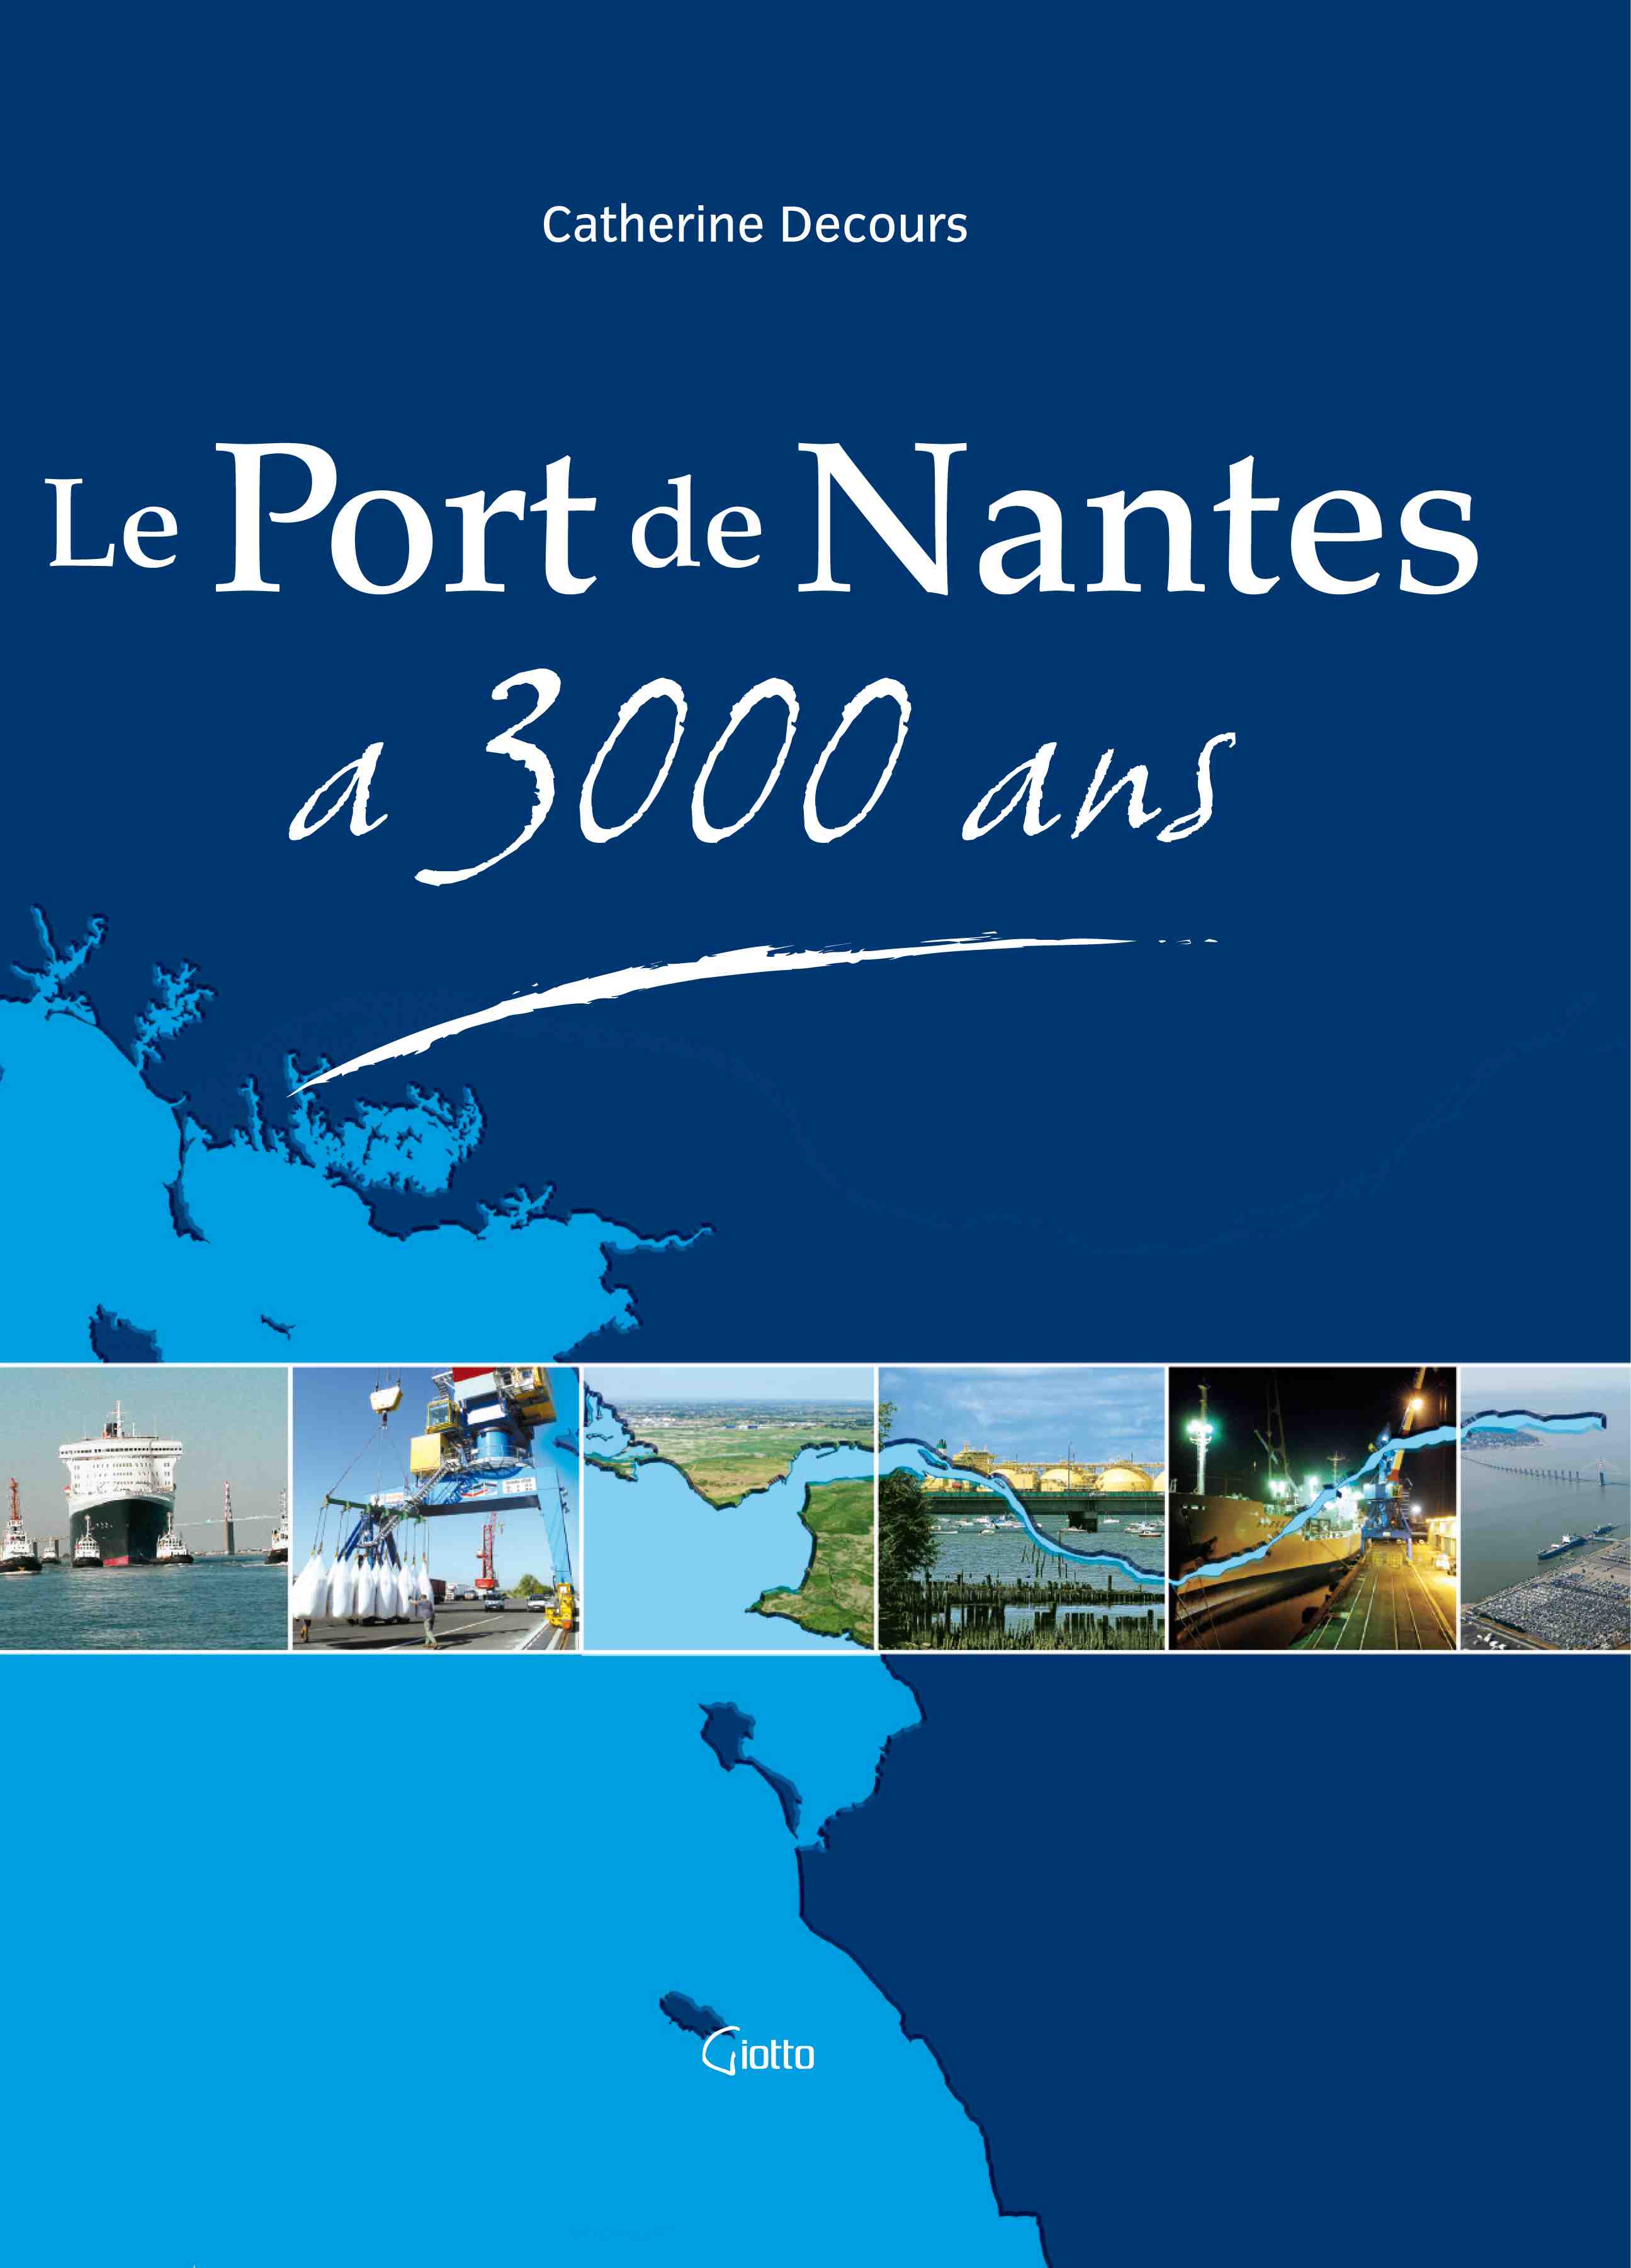 Le Port de Nantes a 3000 ans, 2006, 116 p., ill. coul.